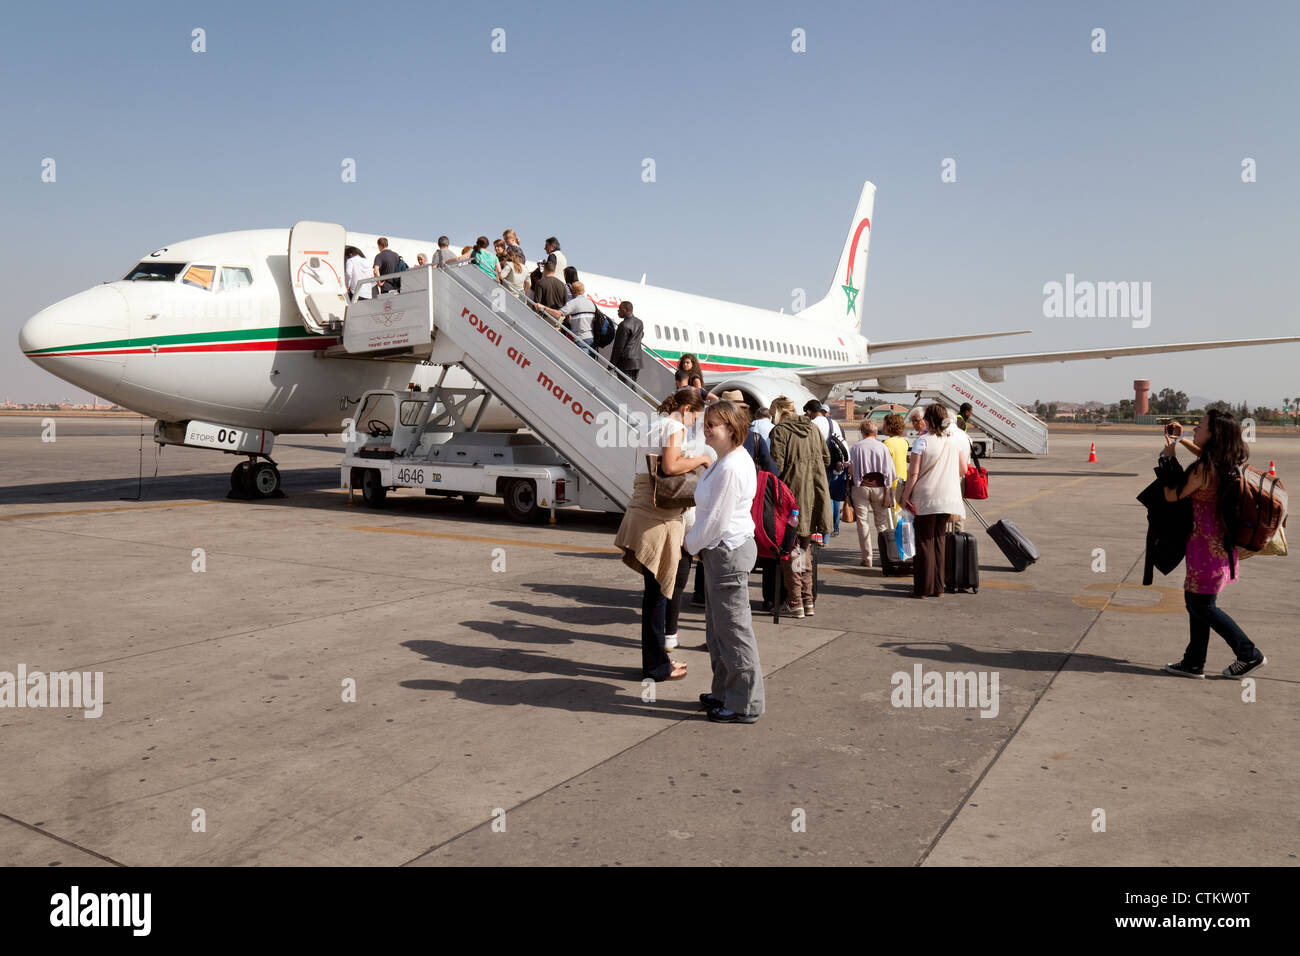 Fahrgäste einsteigen in ein Flugzeug der Royal Air Maroc in Marrakesch Flughafen Marokko Afrika Stockfoto